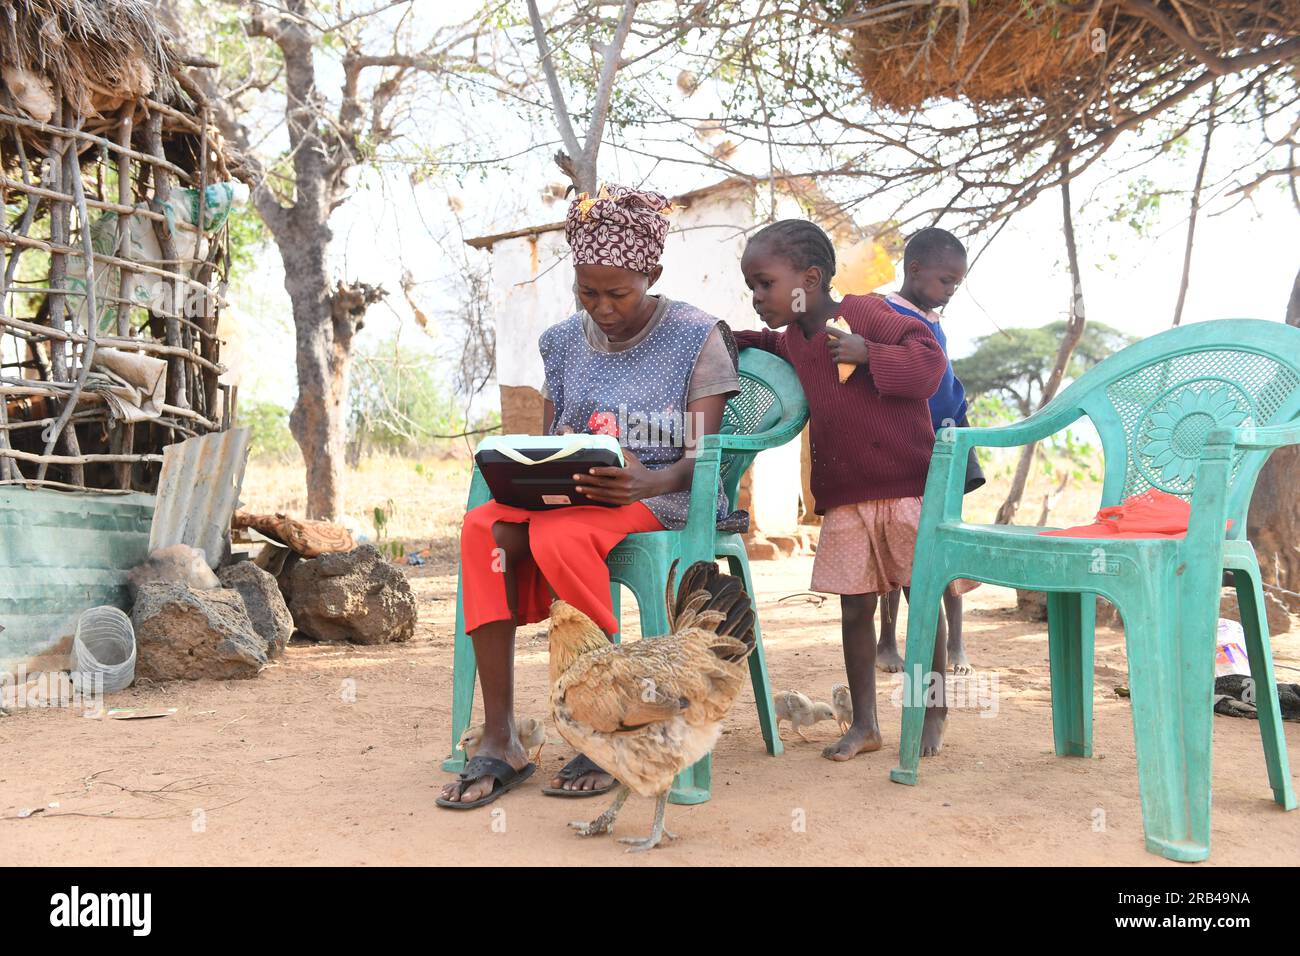 (230707) -- MTITO ANDEI, 7. Juli 2023 (Xinhua) -- Rehema Yusuf, eine Mutter von drei Kindern, lernt eine Lektion mit einem solarbetriebenen Tablet zu Hause im Dorf Nthunguni, Mtito Andei, Kenia, 1. Juli 2023. Rehema Yusuf ist eine Mutter von drei Kindern, die in einem kleinen Dorf in Mtito Andei, etwa 200 km südöstlich von Nairobi, leben. Als Teilnehmer an einem Solarmedienprojekt gelang es ihr, mehr Geld zu verdienen und ihre Kinder besser zu ernähren, indem sie Friseur und einige andere Fähigkeiten erlernte, um mehr Arbeitsplätze zu bekommen. Shenzhen Solar Run Energy Co Limitierte und Nairobi-basierte Mama Layla Solarleuchten Stockfoto